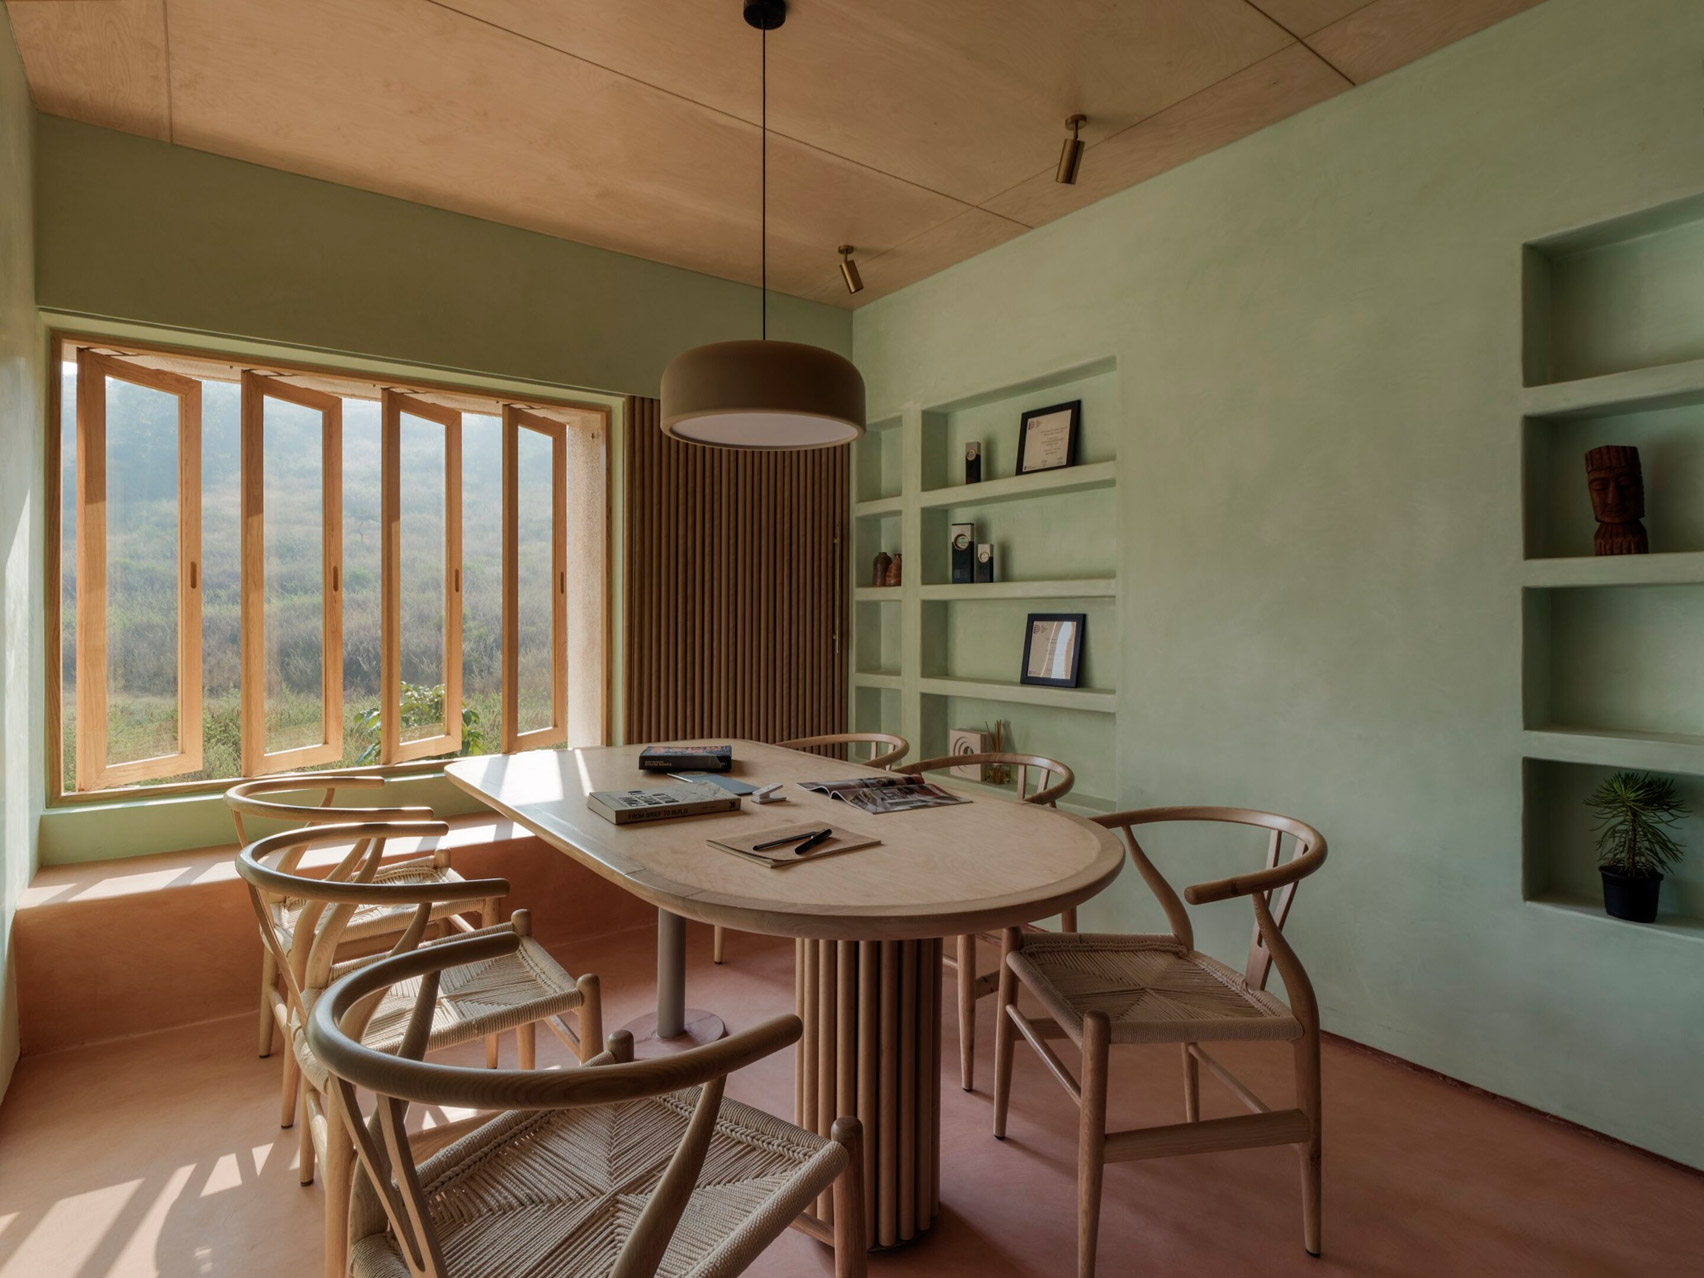 Sala de reuniones con paredes de color verde claro y muebles de madera en un estudio en Pune, India